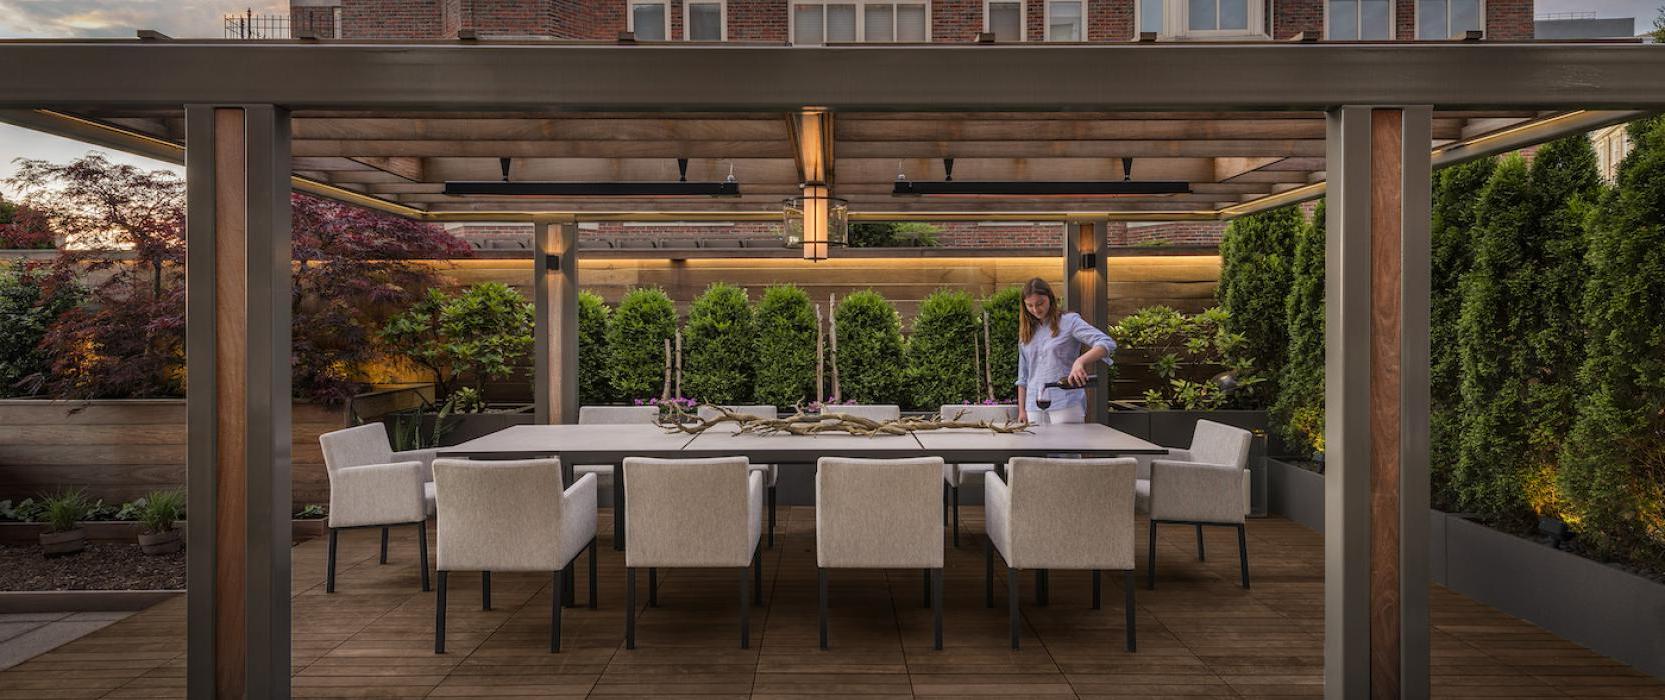 Zen Associates, Al Fresco Dining, Outdoor Living Spaces, 景观 Design